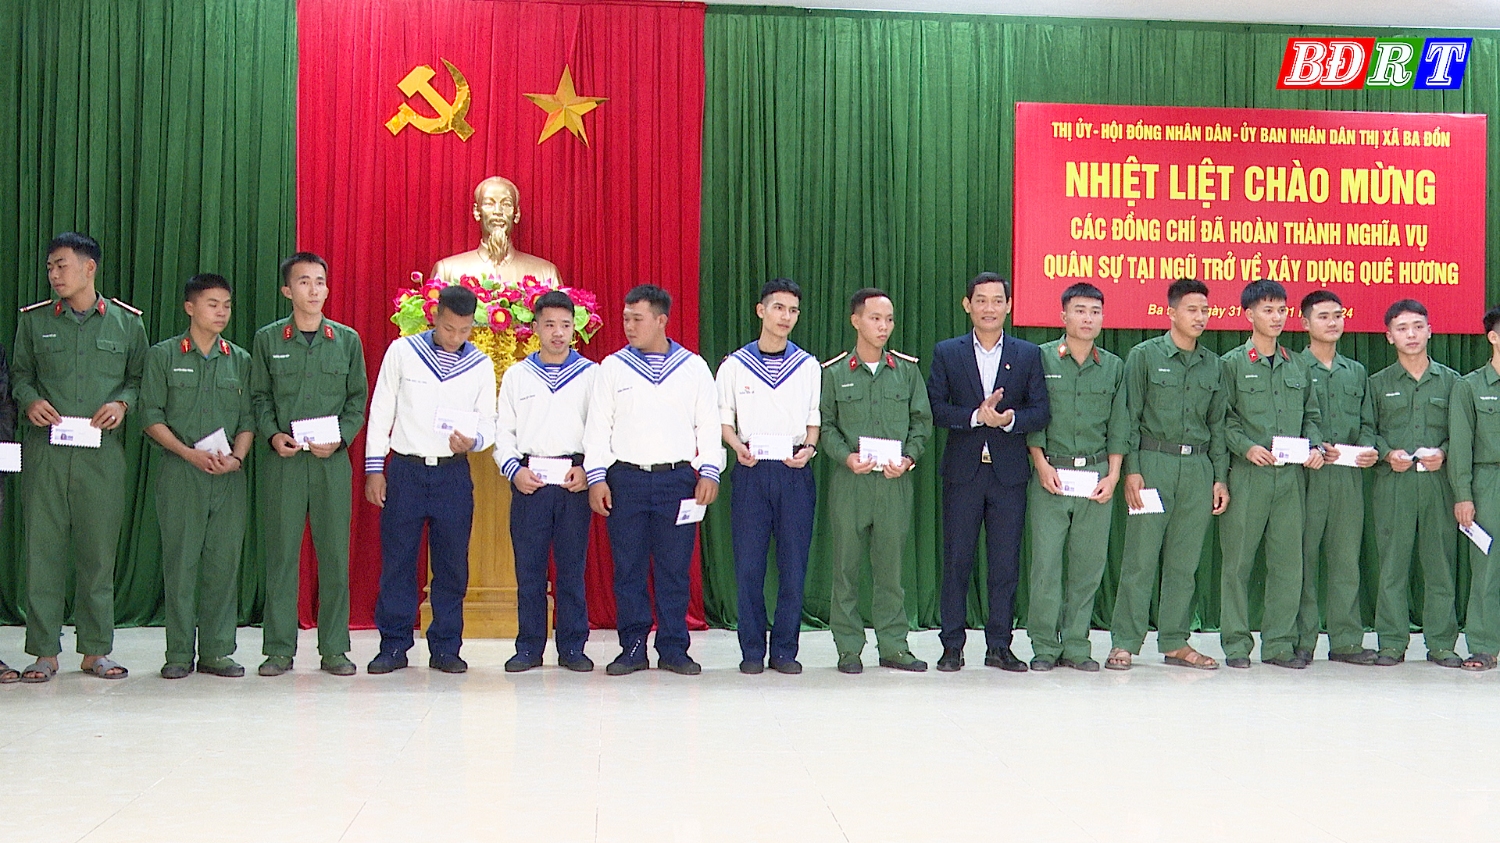 Đồng chí Nguyễn Văn Tình, Phó Chủ tịch UBND thị xã tặng quà cho các quân nhân